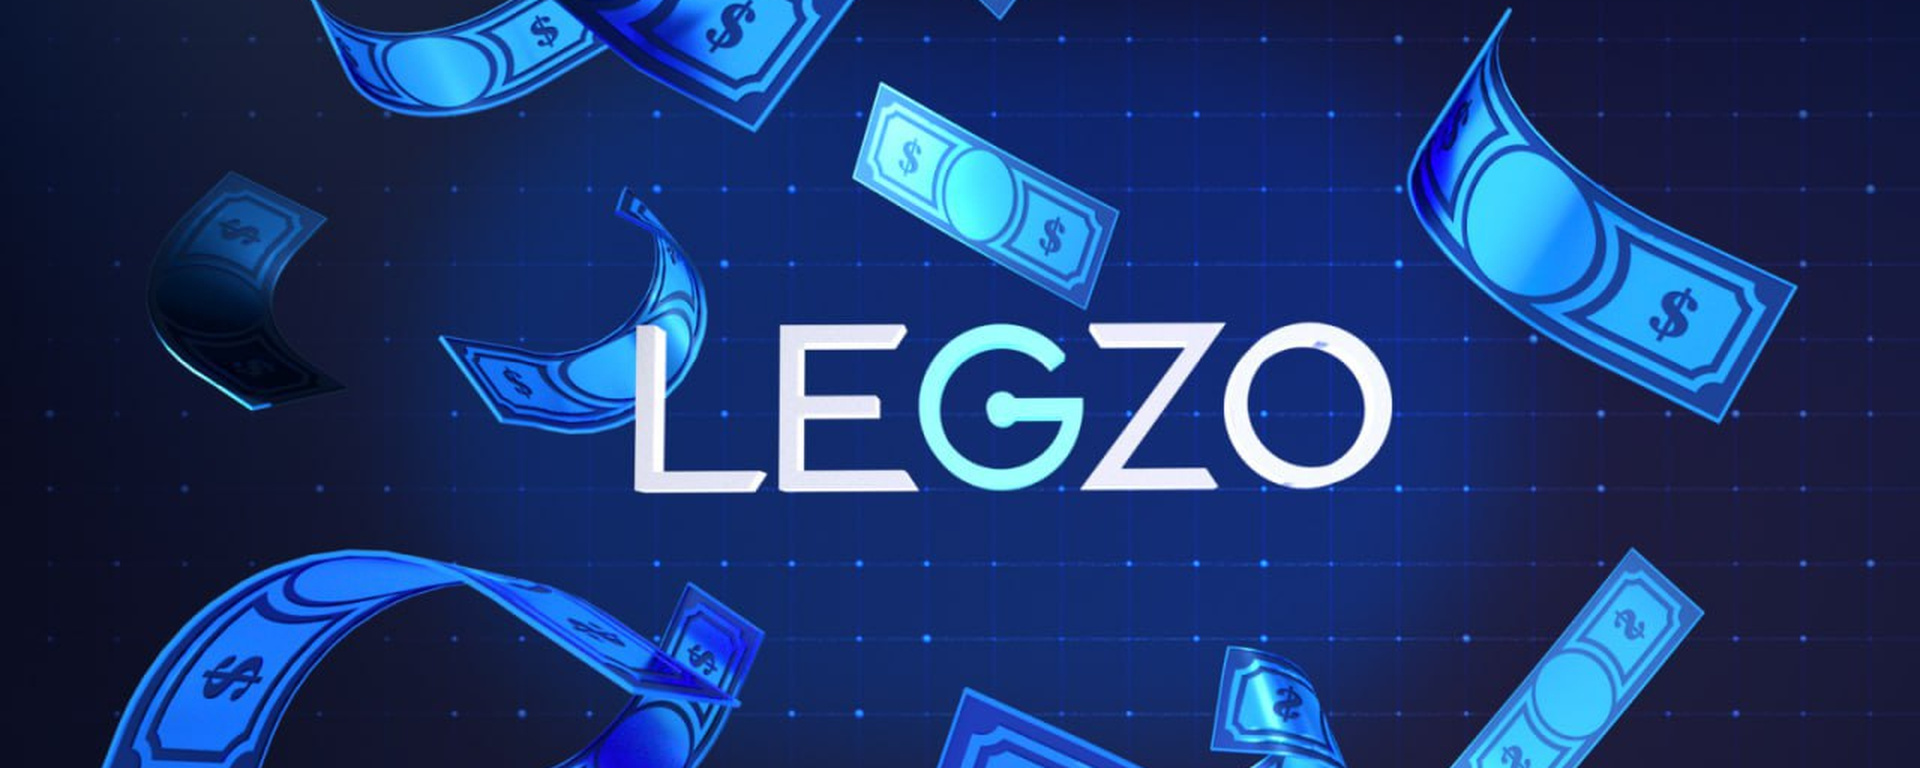 Откройте для себя мир азарта в Legzo Casino